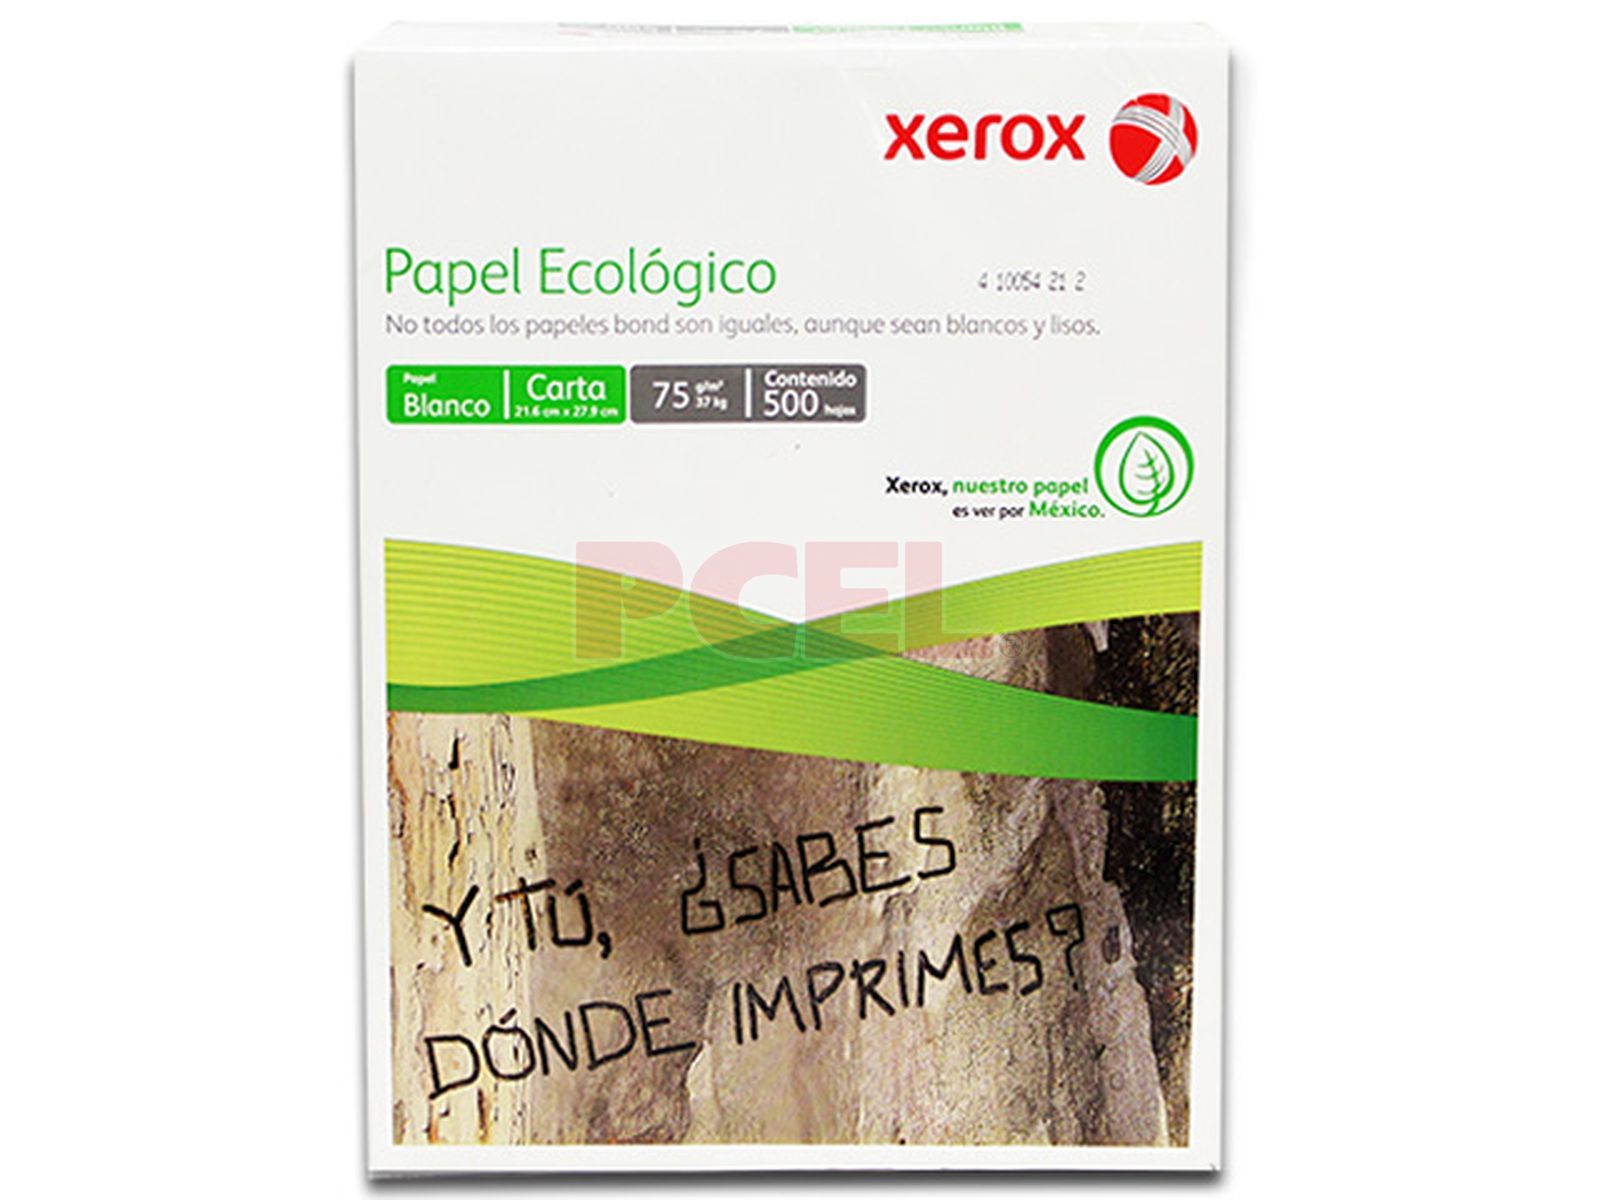 Eliminar Casa de la carretera Interpretativo Papel Bond Ecologico Xerox tamaño Carta. Caja con 10 paquetes de 500 hojas.